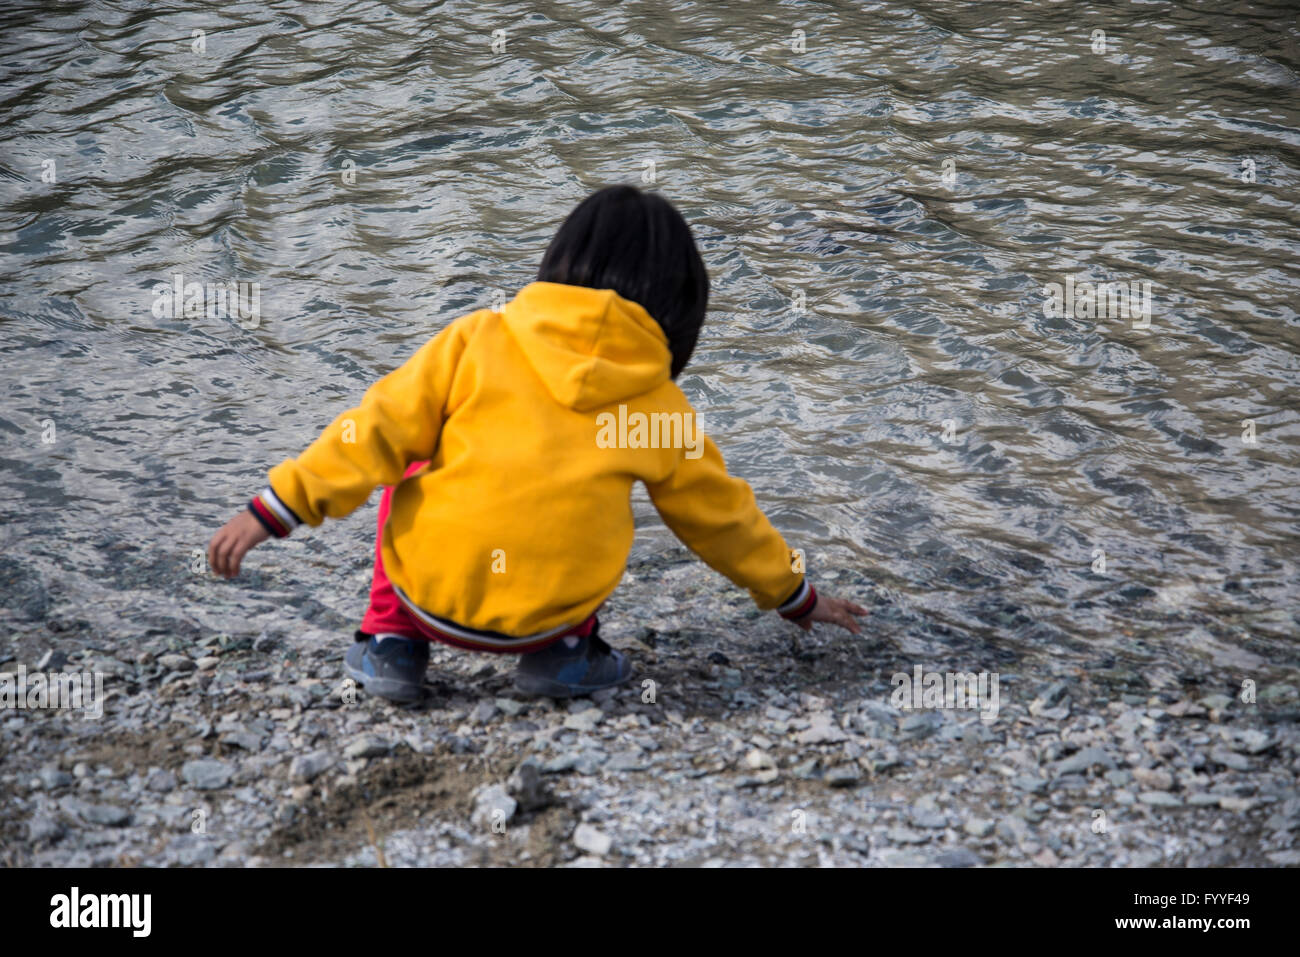 Stile di vita - Ritratto - bambino che gioca sul lato acqua Foto Stock